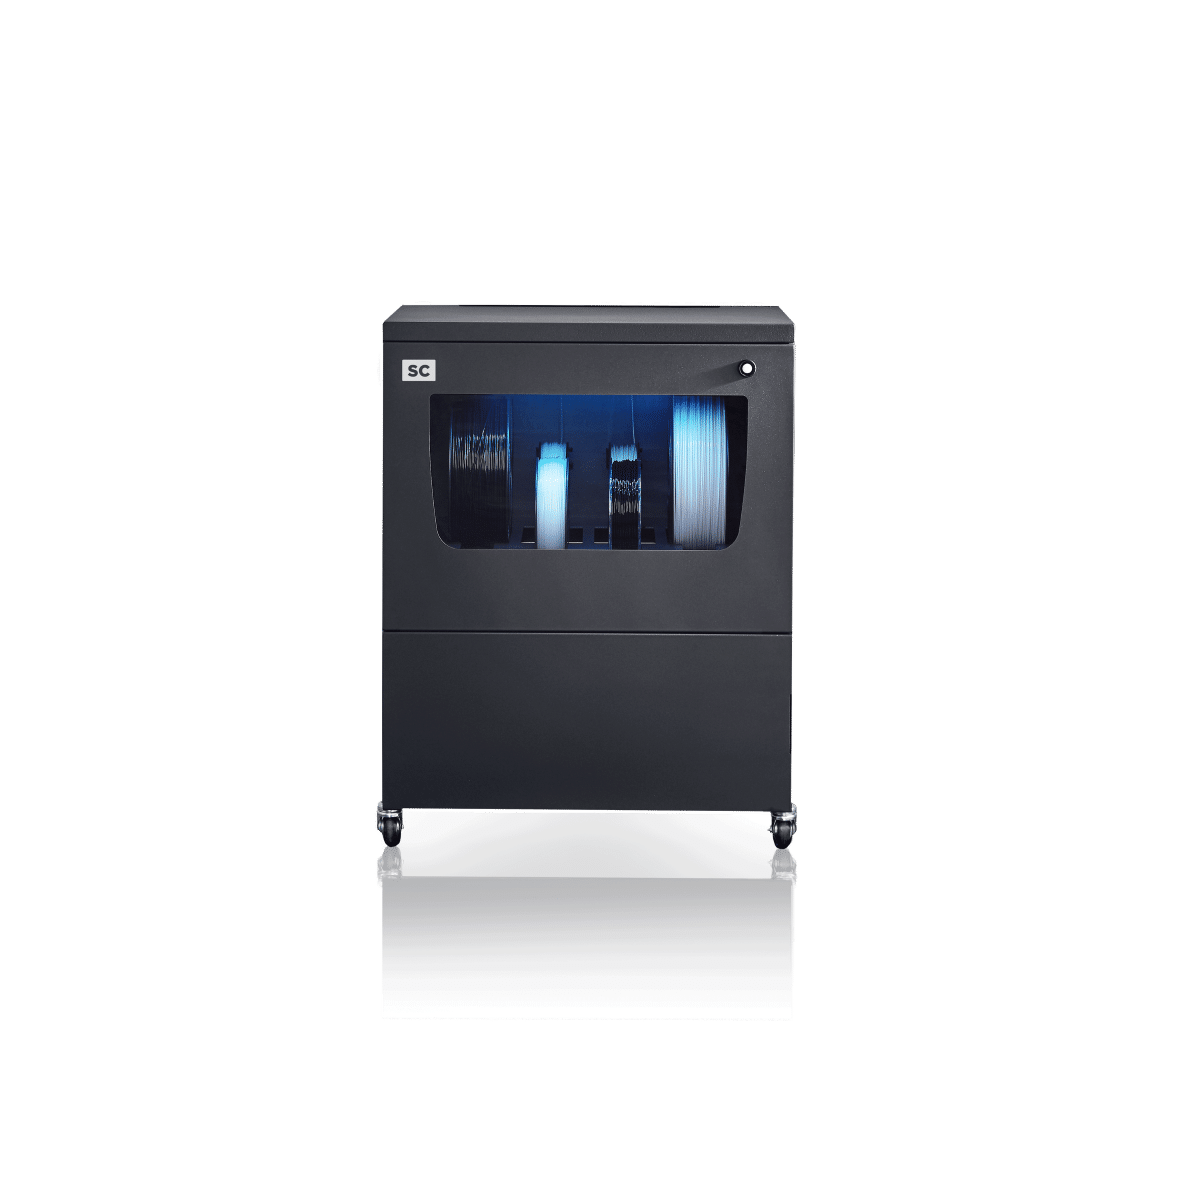 Køb BCN3D Smart Cabinet 3d printer - Pris 29999.00 kr.